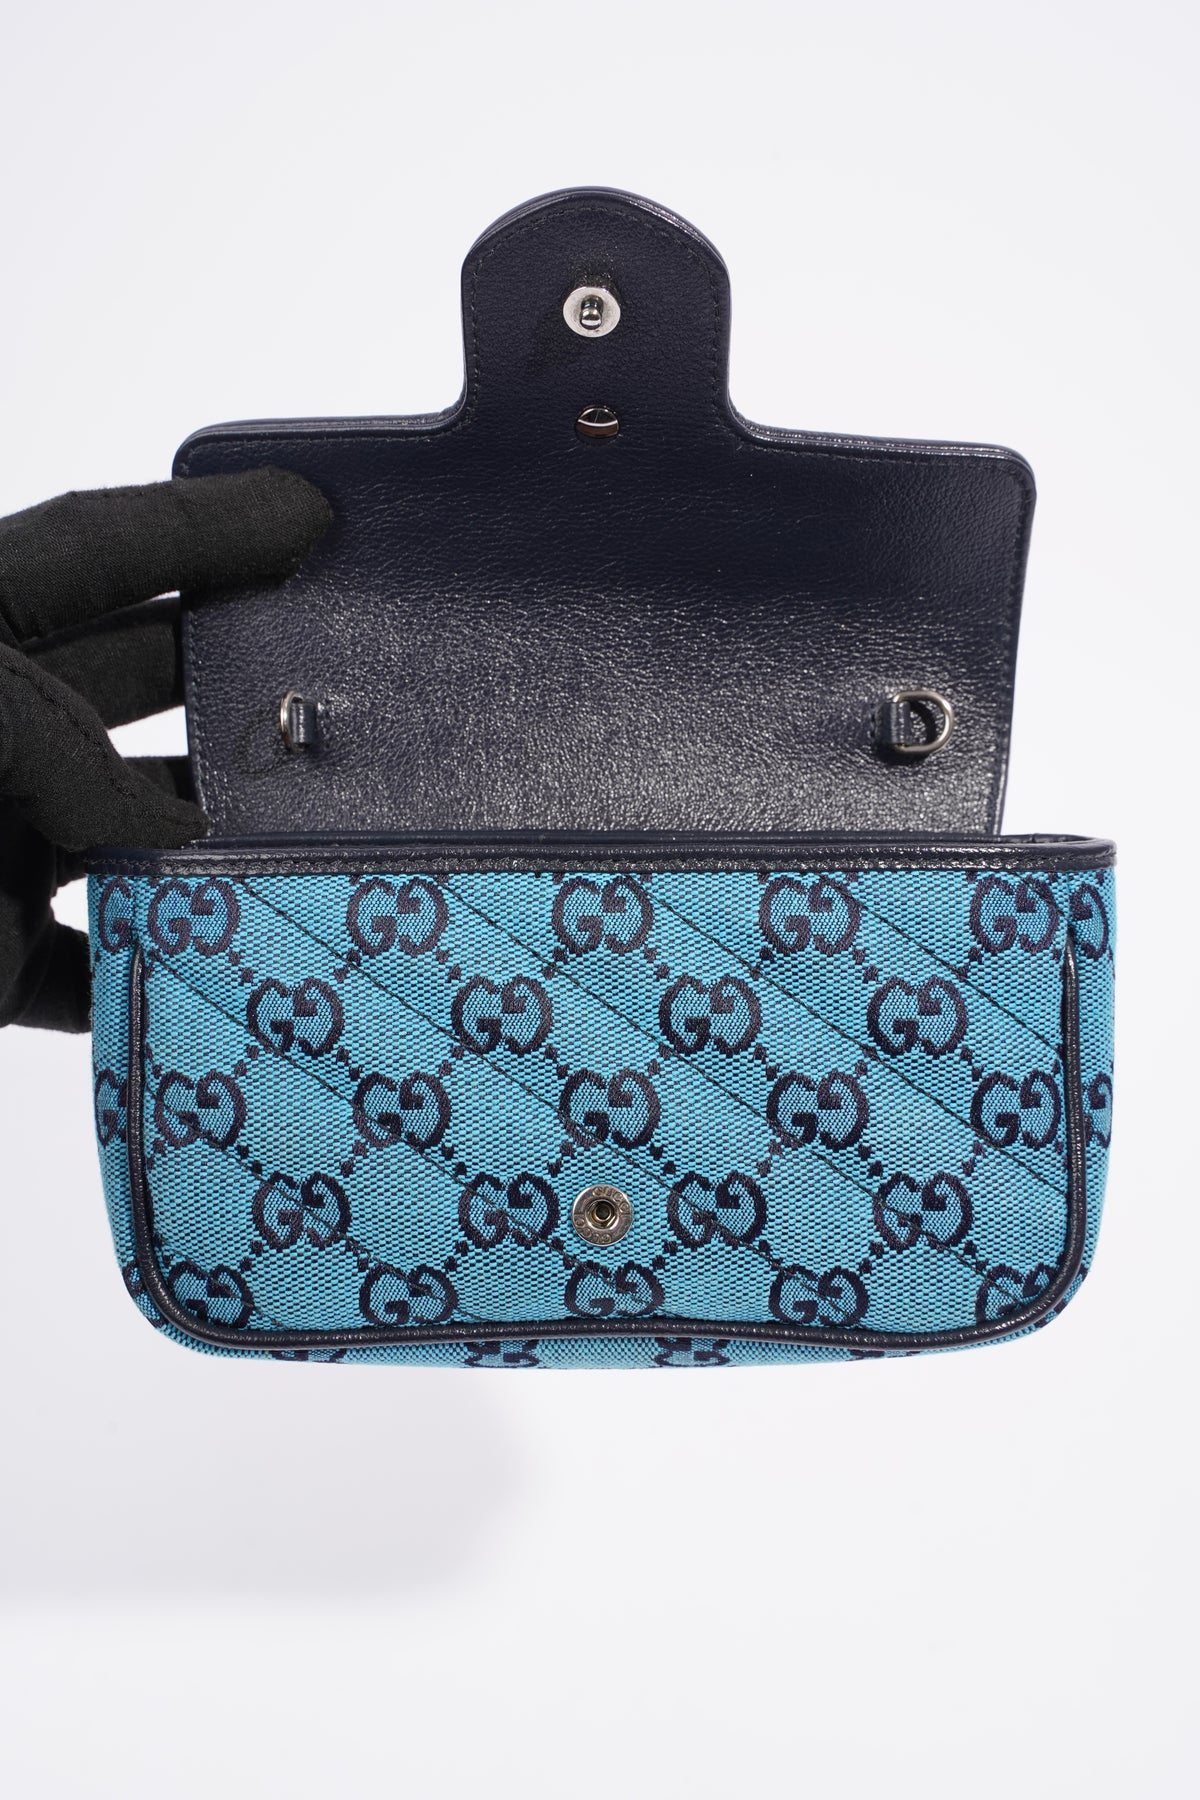 Gucci Blue GG Marmont Multicolour Super Mini Bag For Sale at